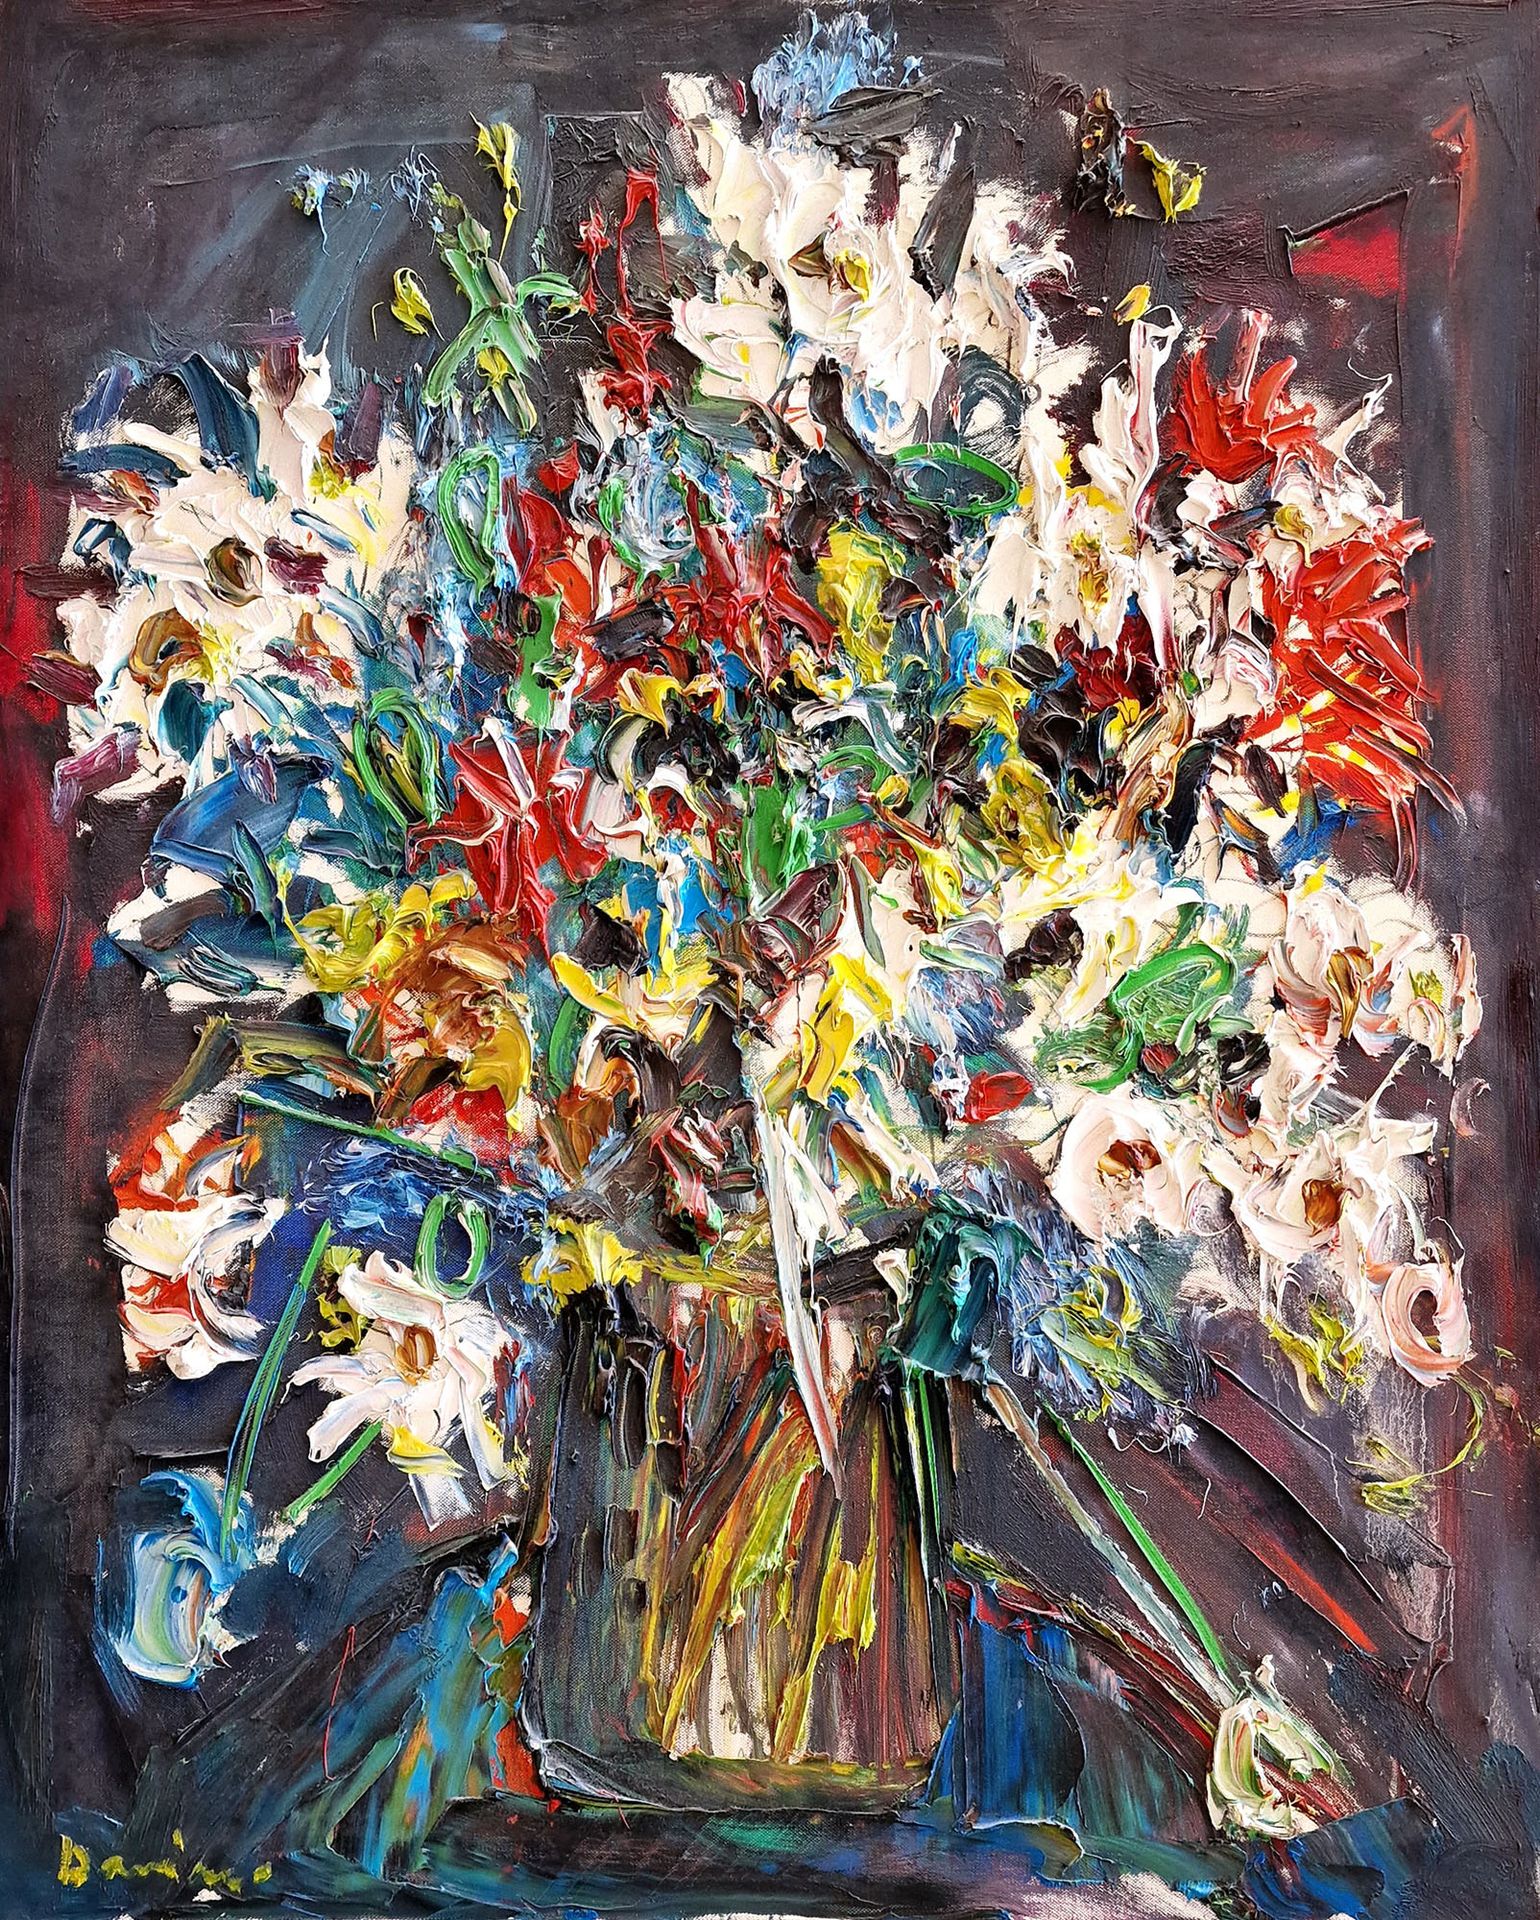 BERNARD DAMIANO (1926-2000) 花束



大型布面油画，左下方有签名。

尺寸：91,5 x 73 cm

出生于库内奥的意大利画家和&hellip;